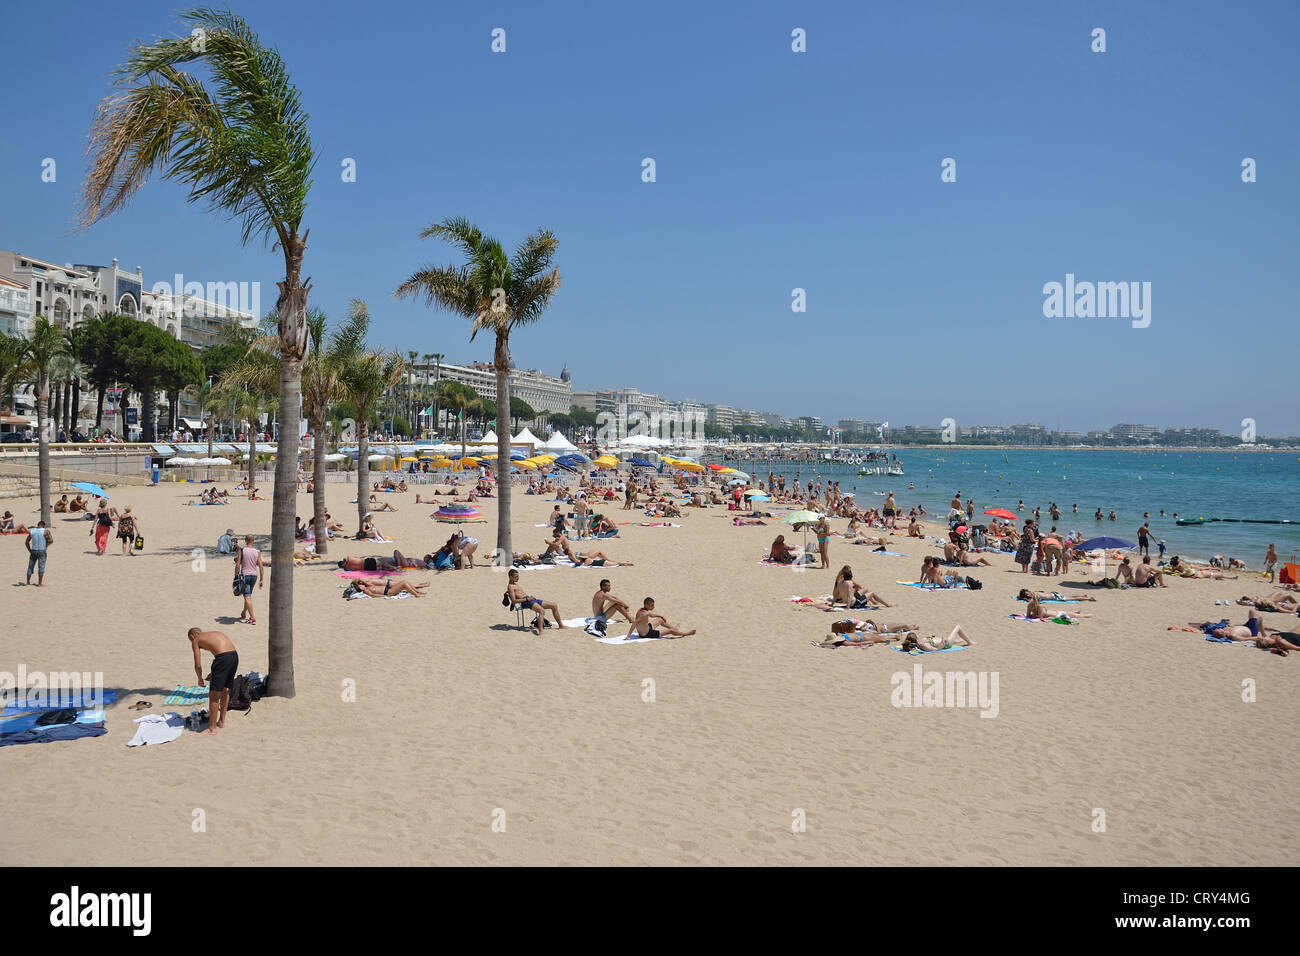 Plage Publique (public beach), Cannes, Côte d'Azur, Alpes-Maritimes ...